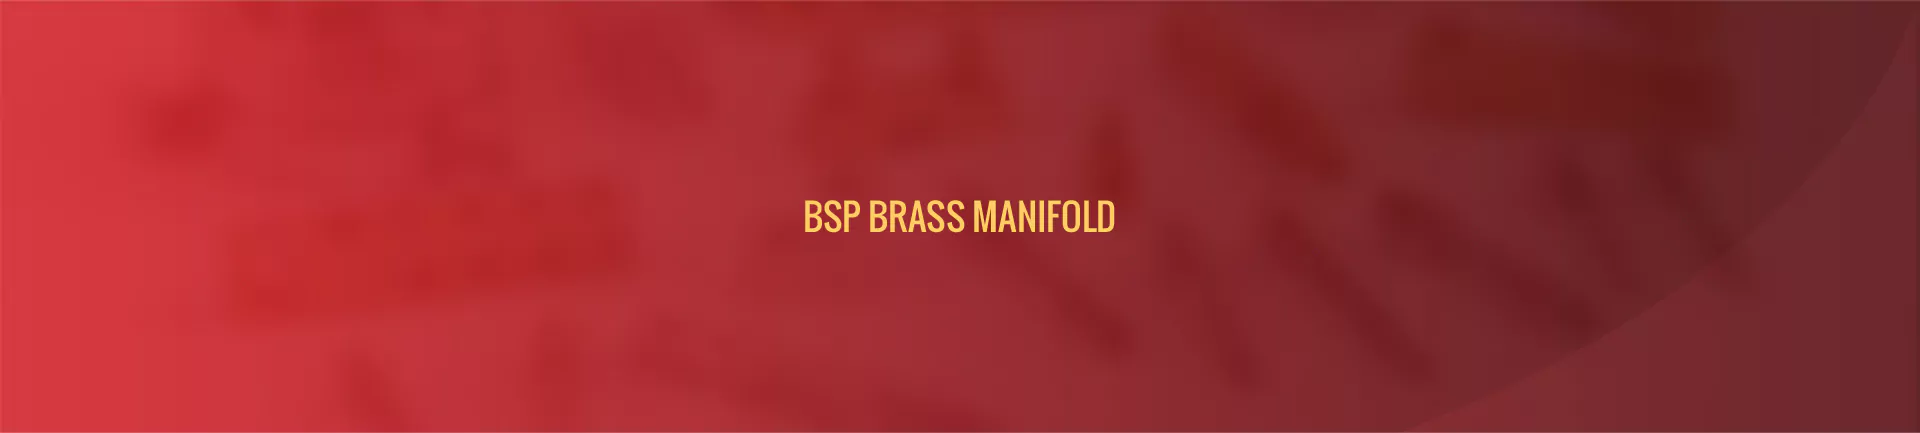 bsp_brass_manifold-banner